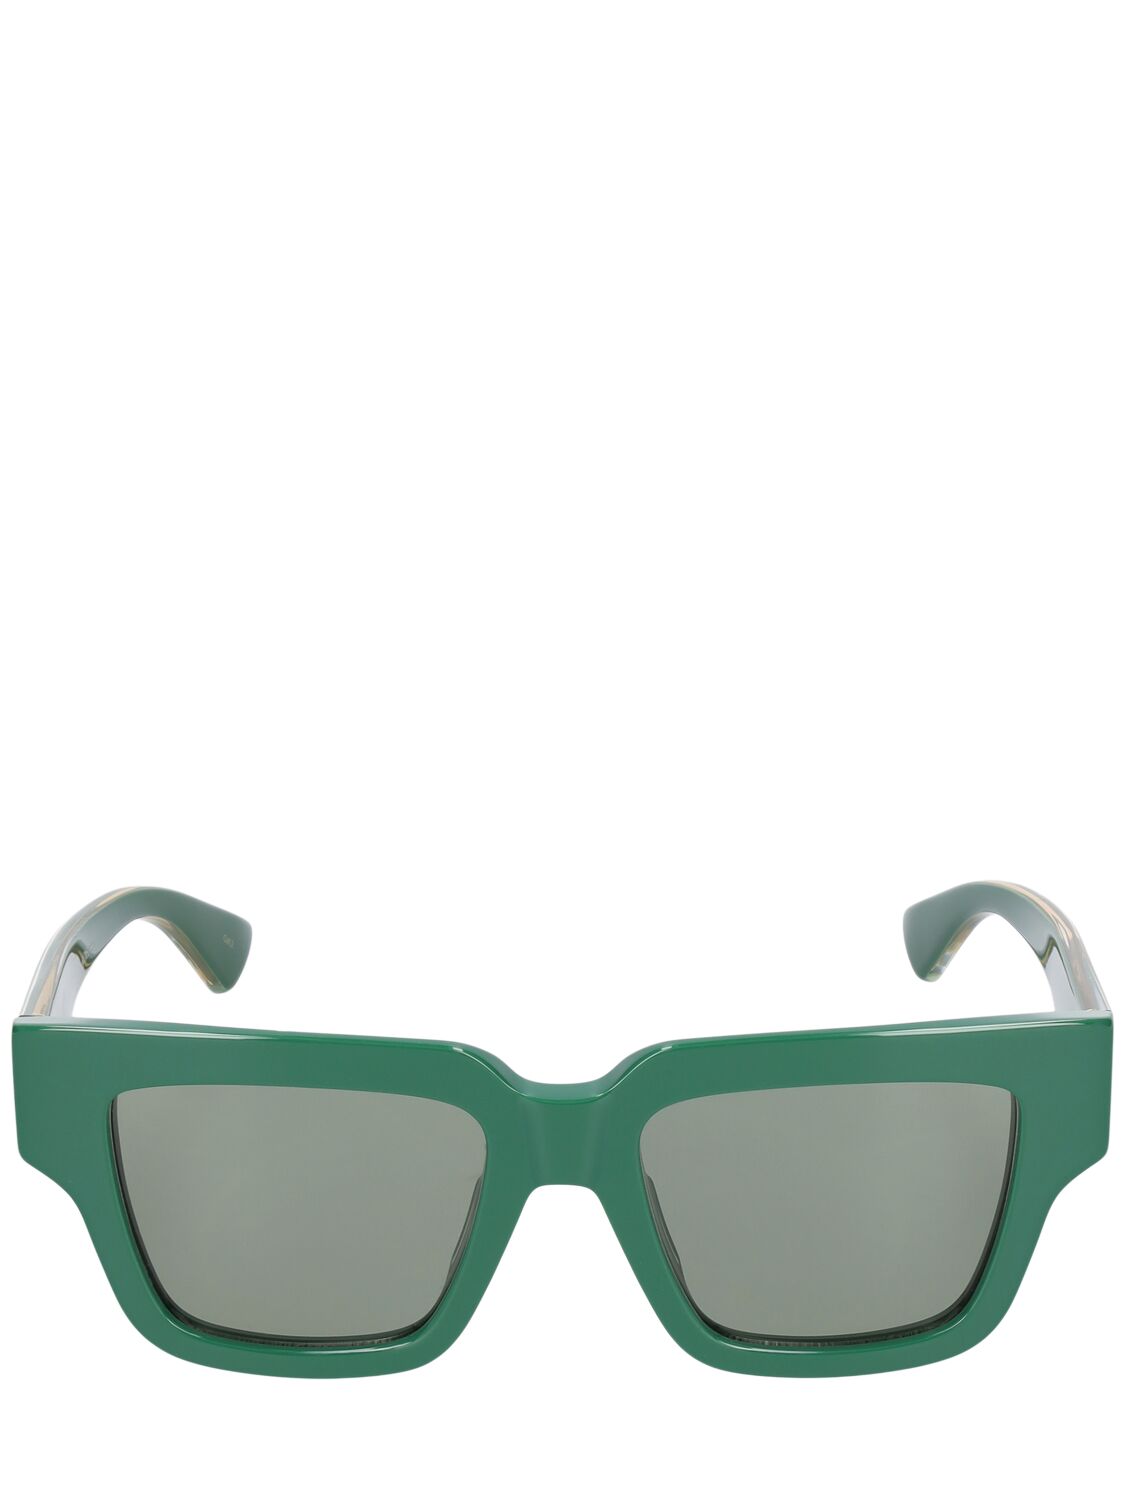 Tri-fold Square Sunglasses